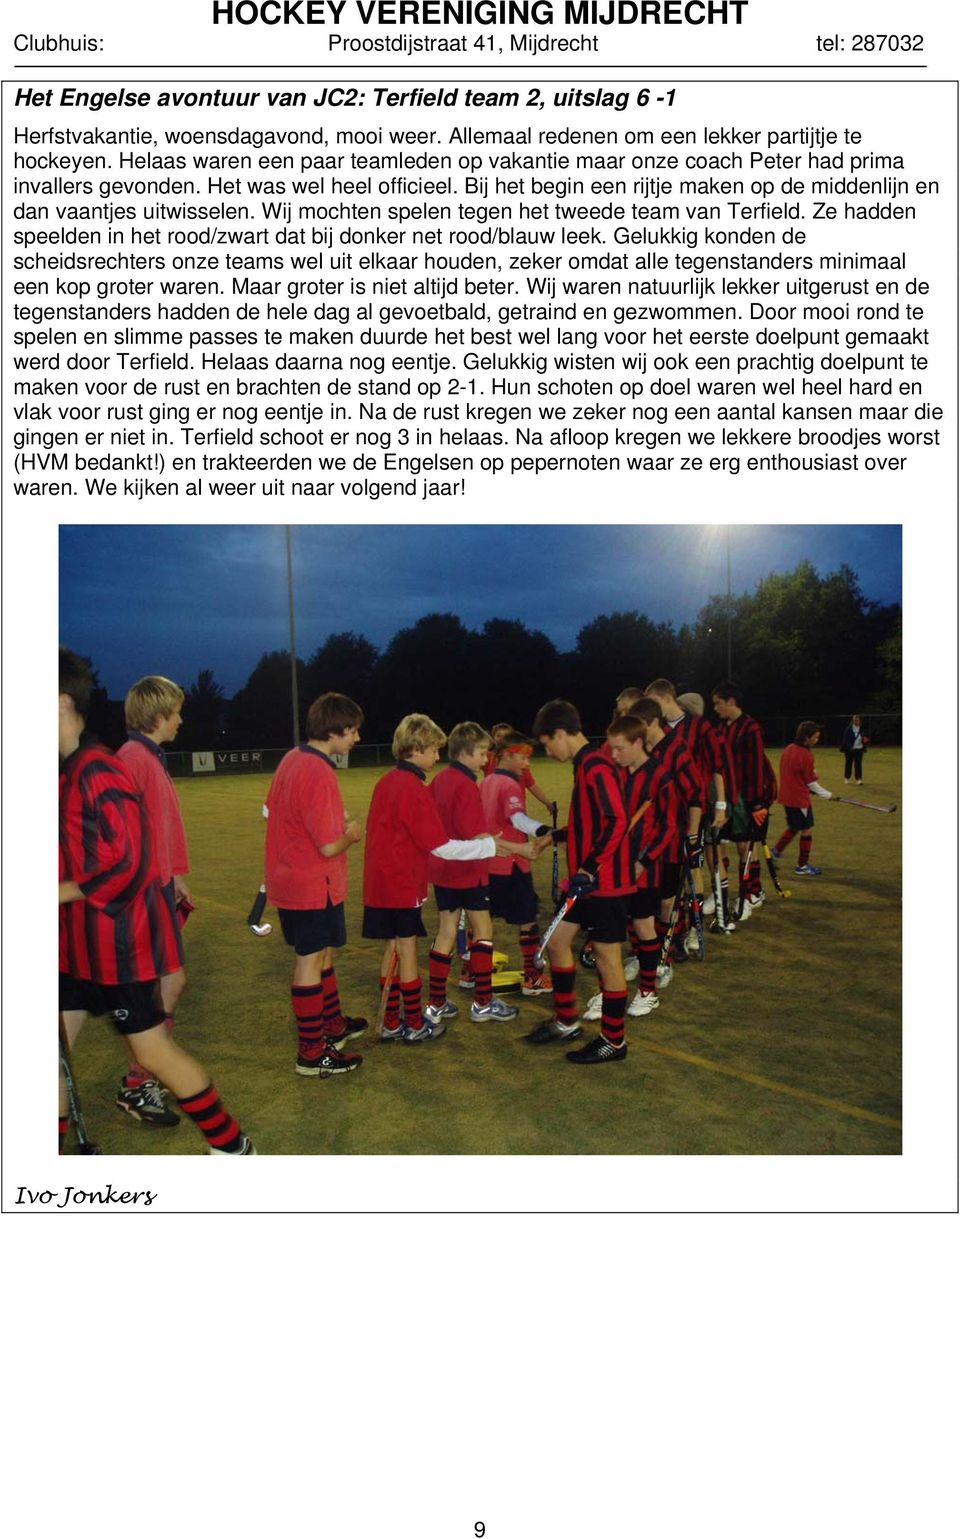 Wij mochten spelen tegen het tweede team van Terfield. Ze hadden speelden in het rood/zwart dat bij donker net rood/blauw leek.